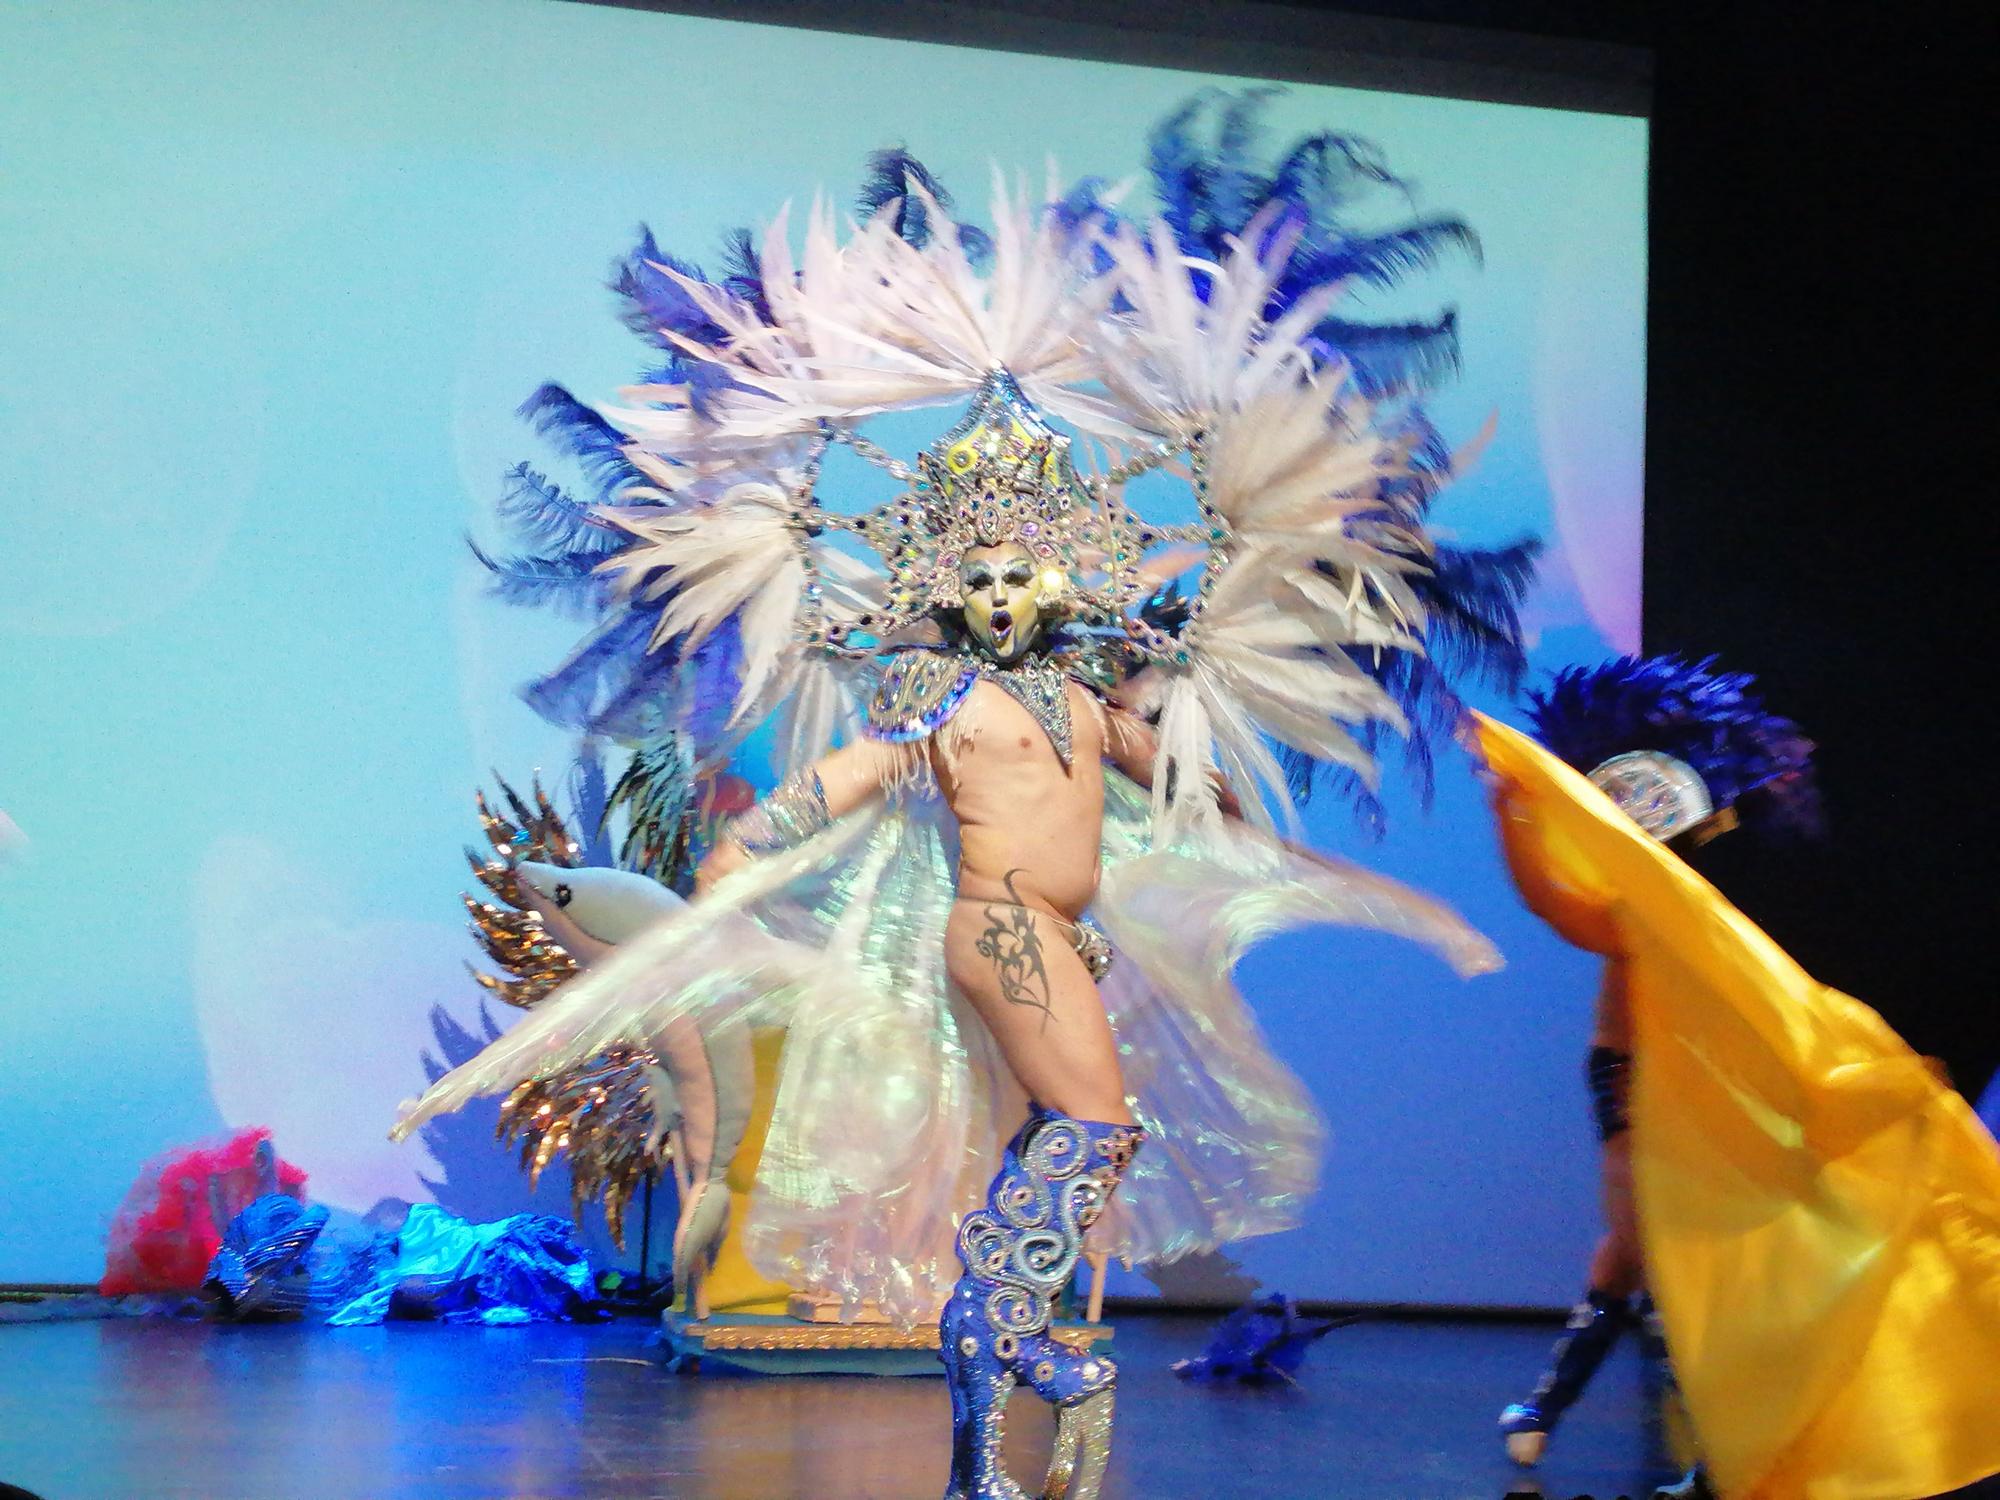 Gala Drag Queen del Carnaval de Águilas